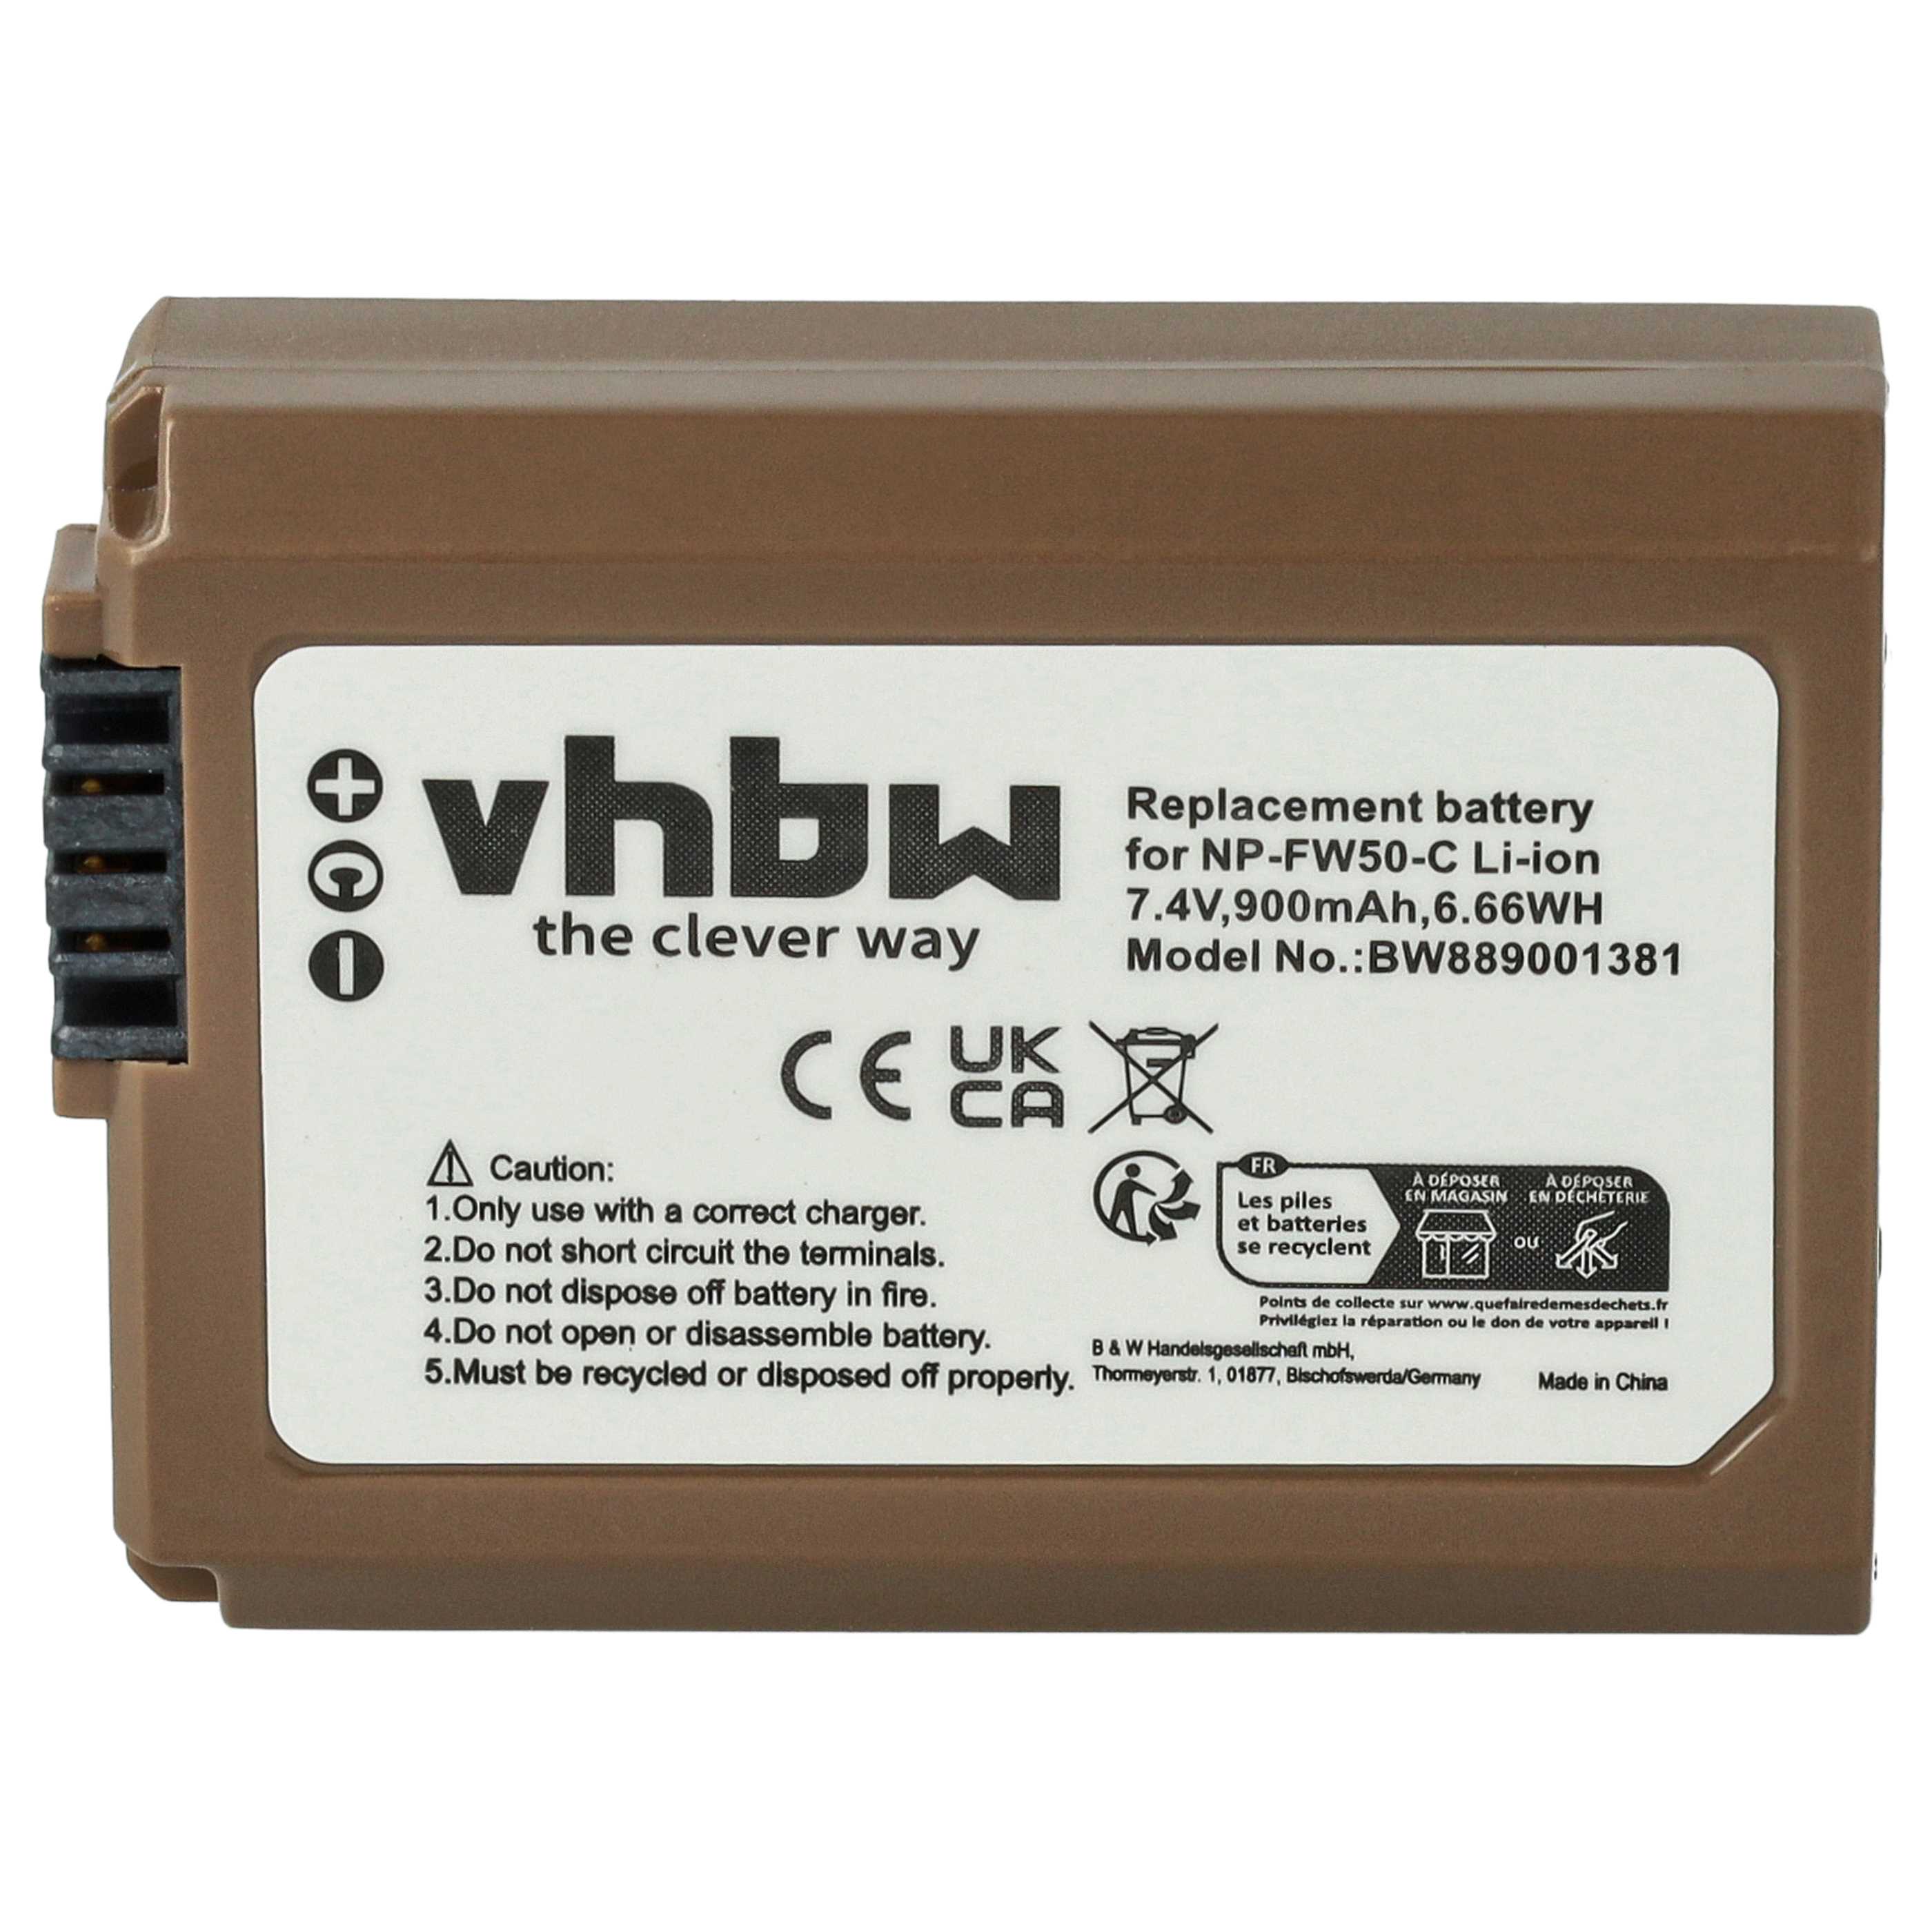 Batterie remplace Sony NP-FW50 pour appareil photo - 900mAh 7,4V Li-ion - USB-C